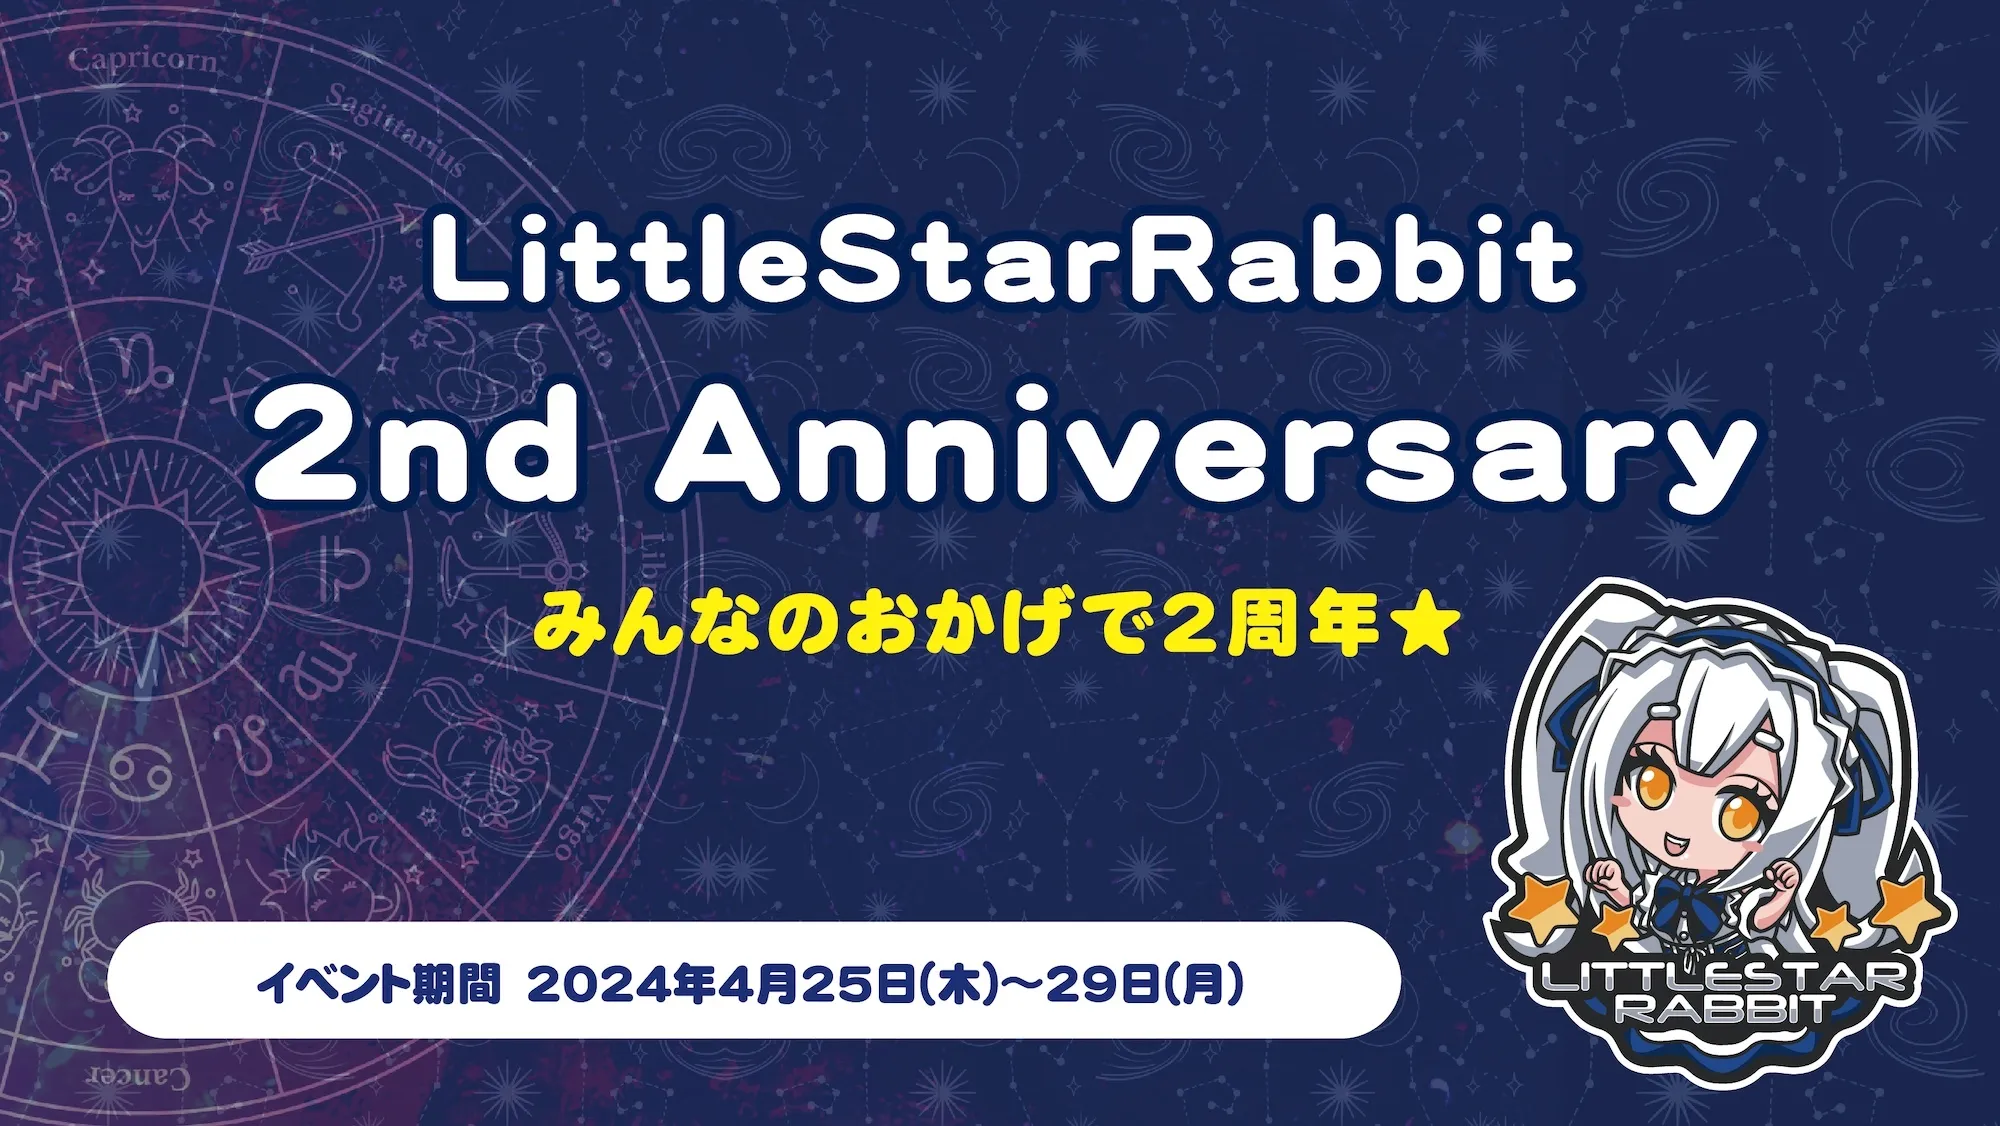 LittleStarRabbit 2nd Anniversary  　- みんなのおかげで2周年★ - トイグループ